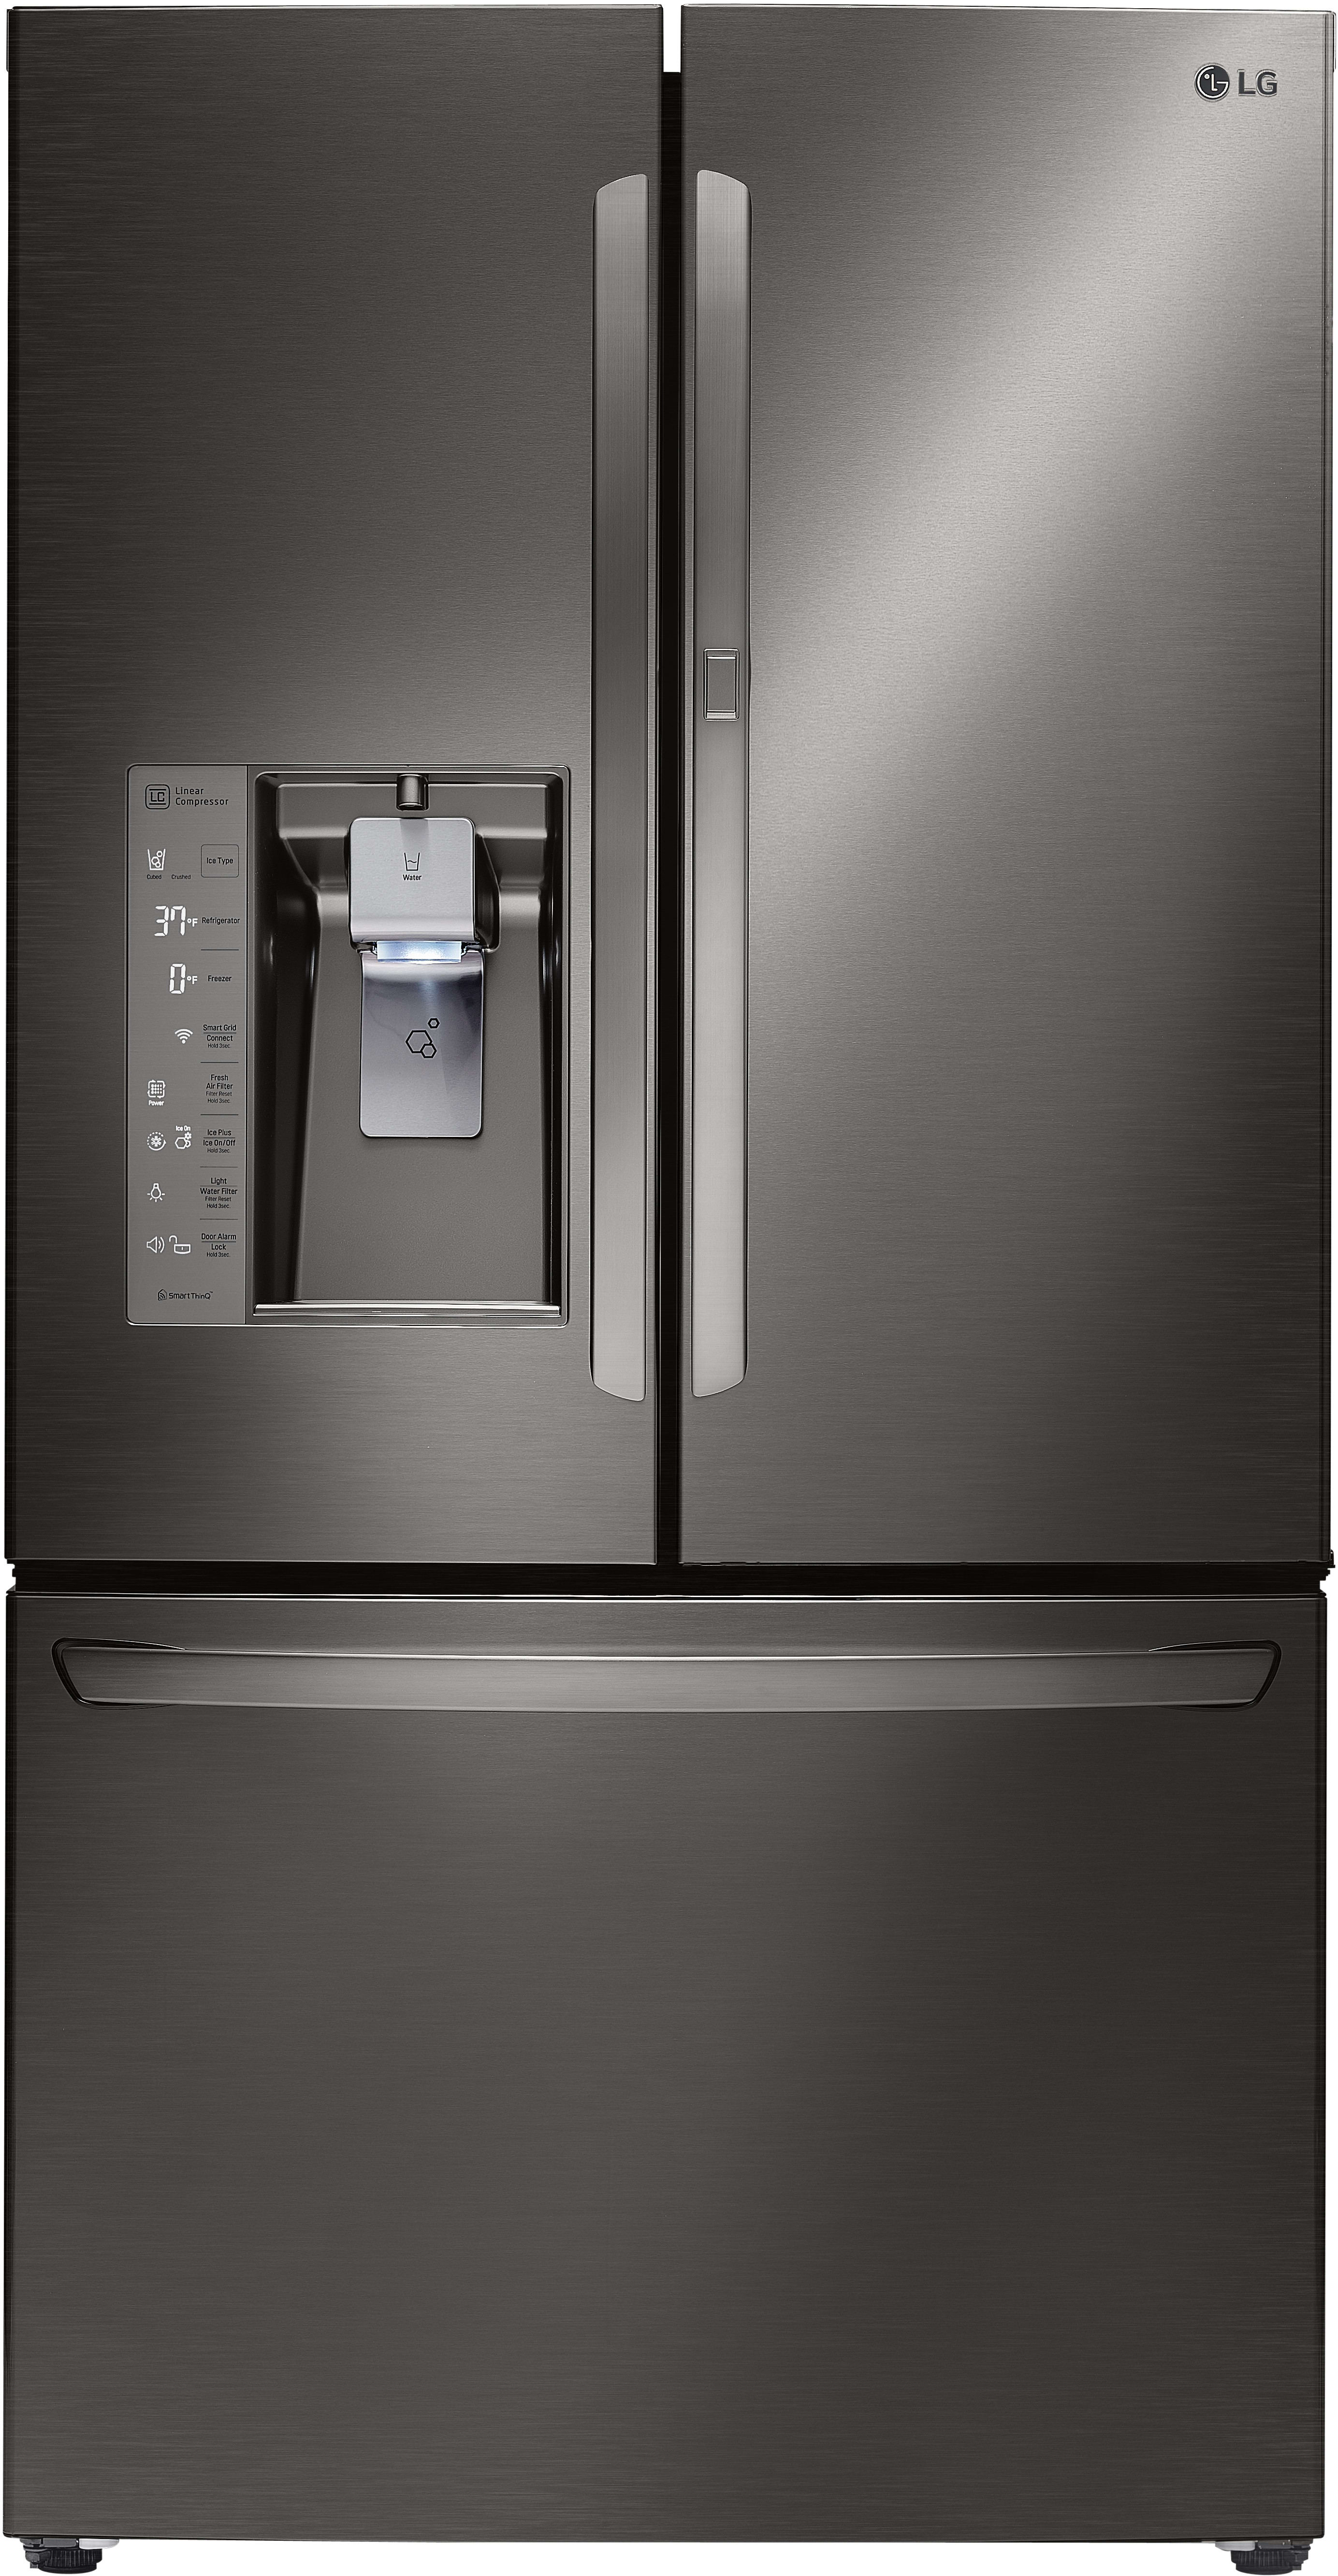 LG LFXS30766D 36 Inch French Door Refrigerator with DoorinDoor®, Slim SpacePlus® Ice System